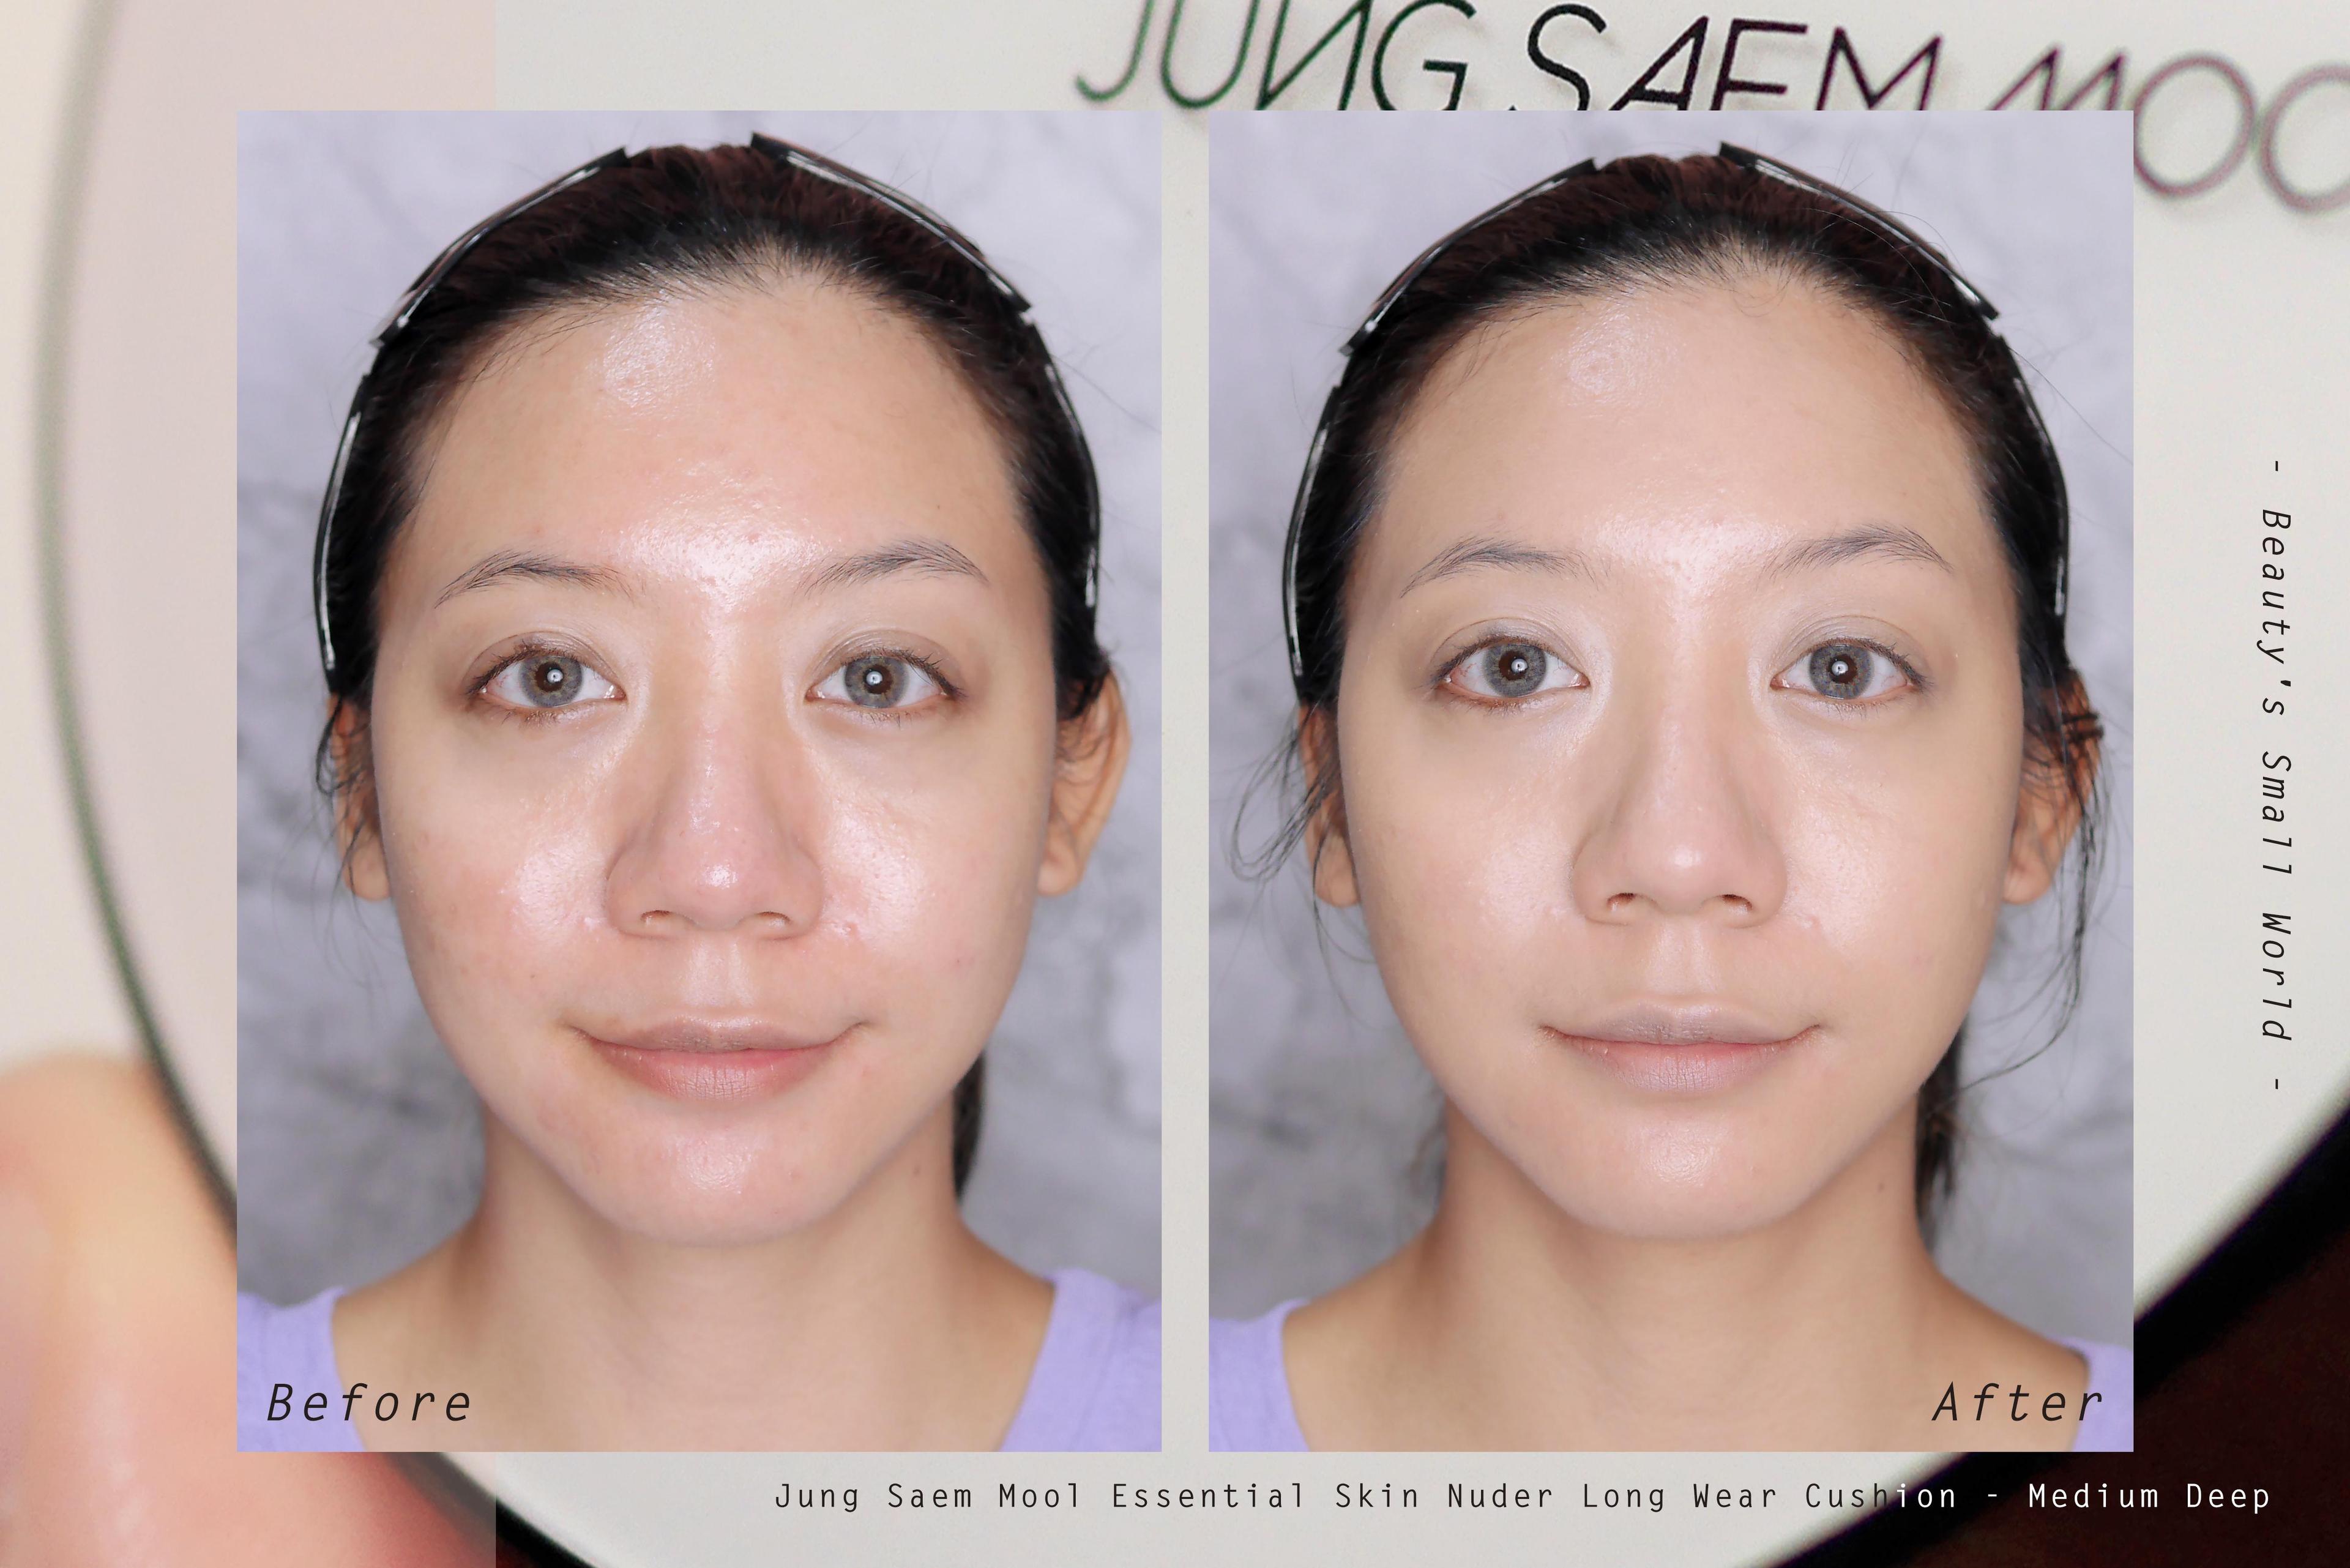 ภาพหน้าปก Jung Saem Mool Essential Skin Nuder Long Wear Cushion ที่:2